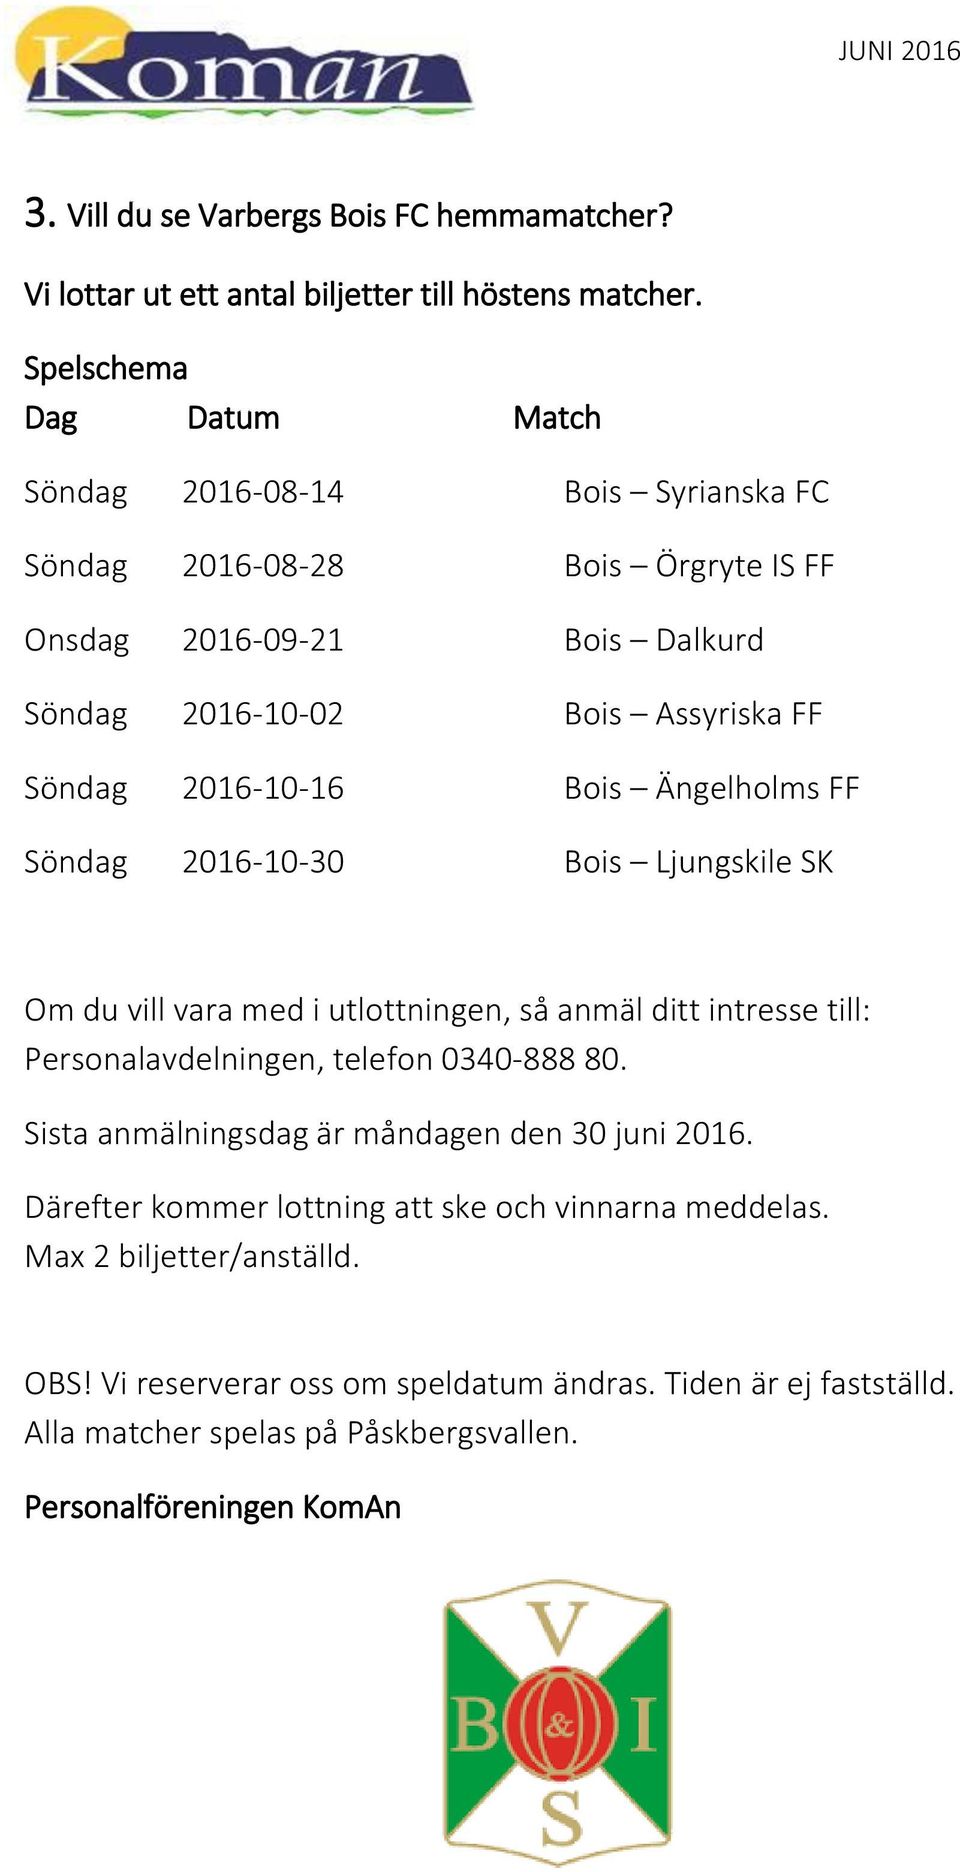 2016-10-16 Bois Ängelholms FF Söndag 2016-10-30 Bois Ljungskile SK Om du vill vara med i utlottningen, så anmäl ditt intresse till: Personalavdelningen, telefon 0340-888 80.